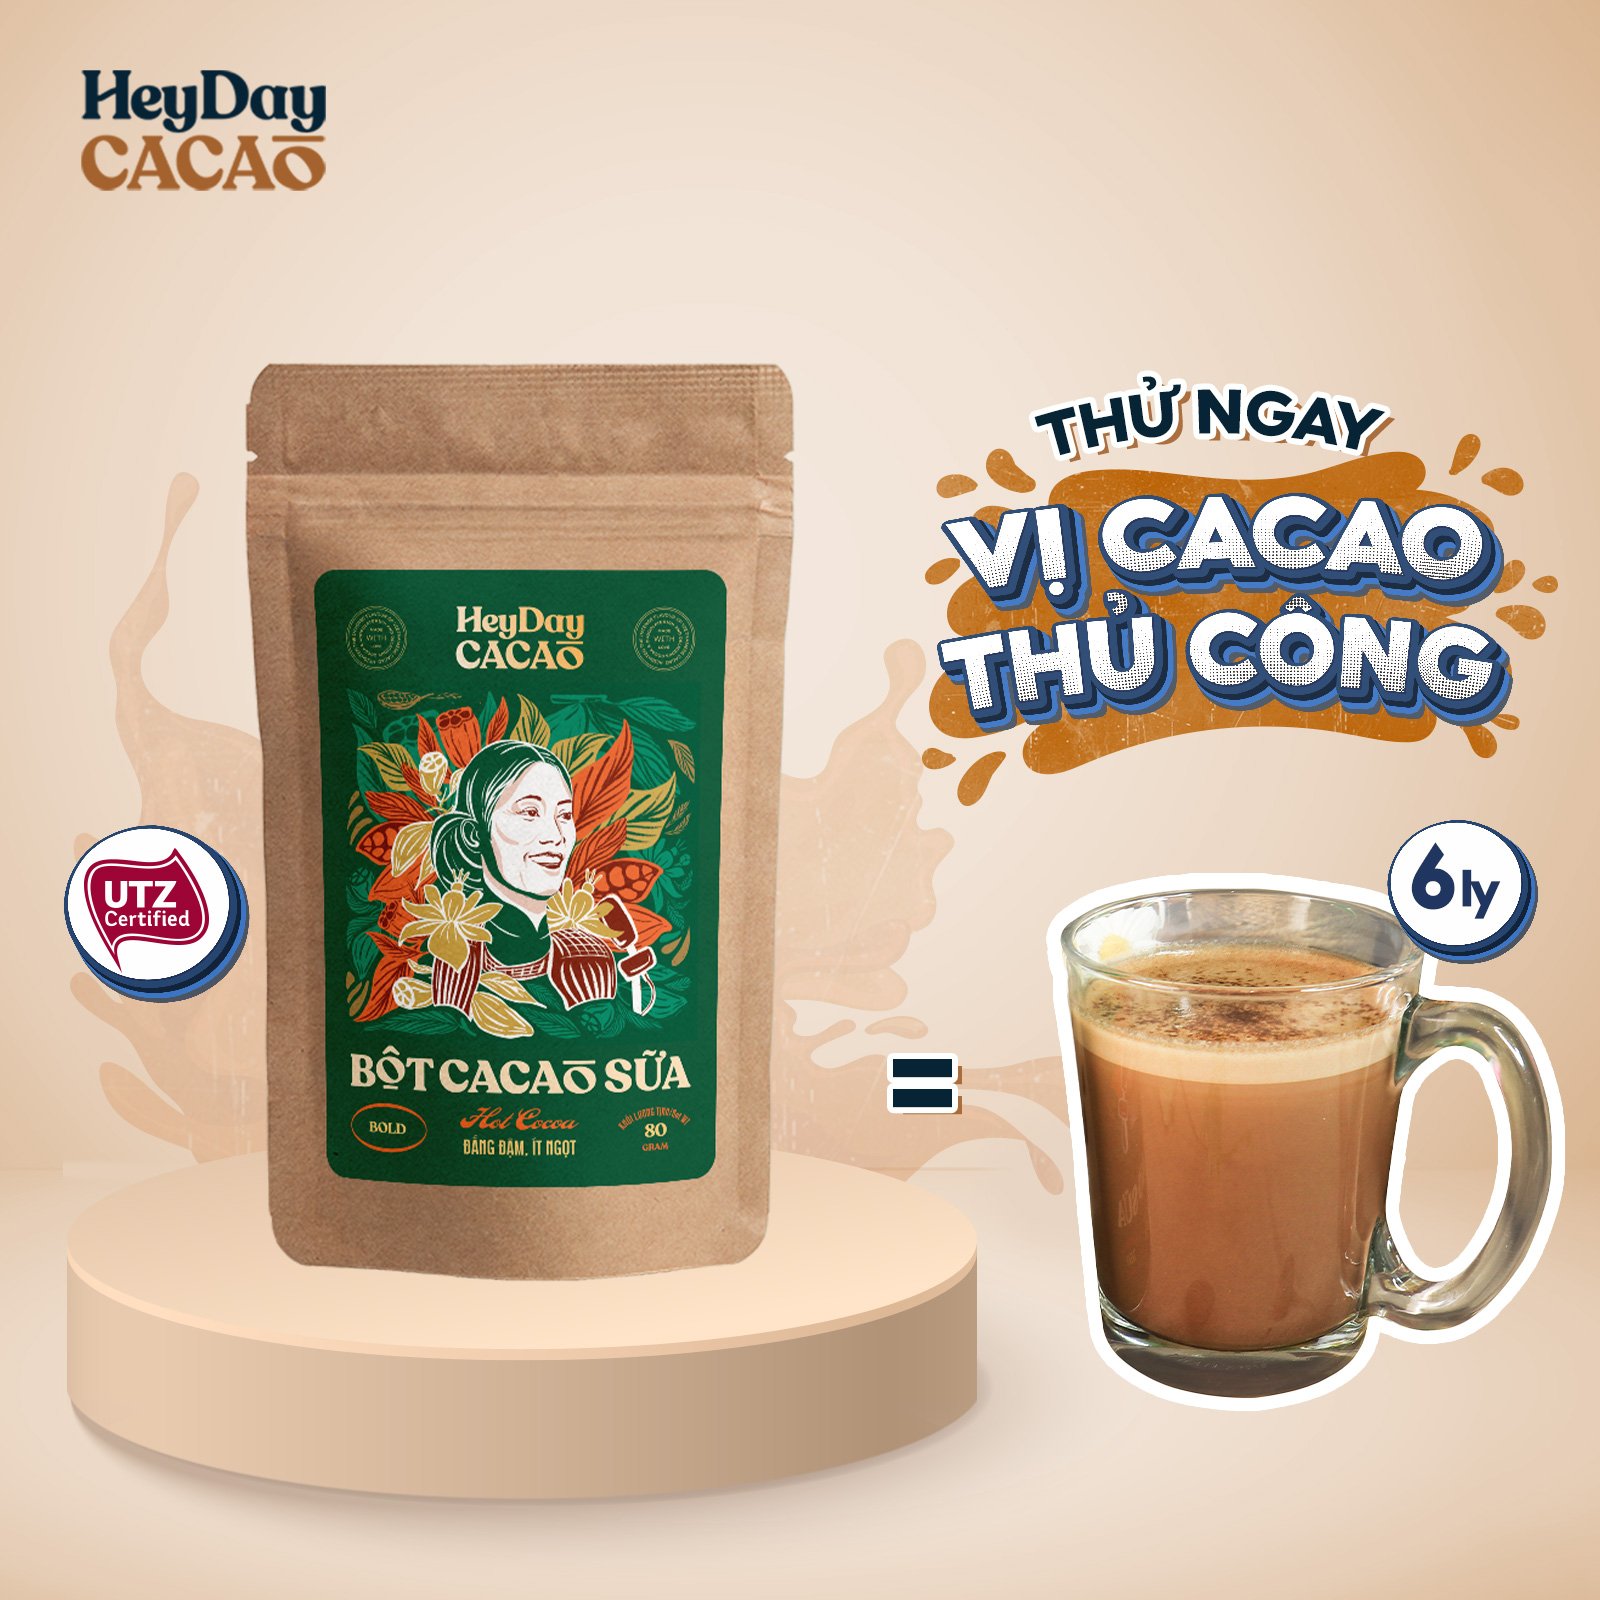 Bột cacao sữa Bold - Đắng đậm, Ít ngọt Túi 80g - BSP Thật - Heyday Cacao